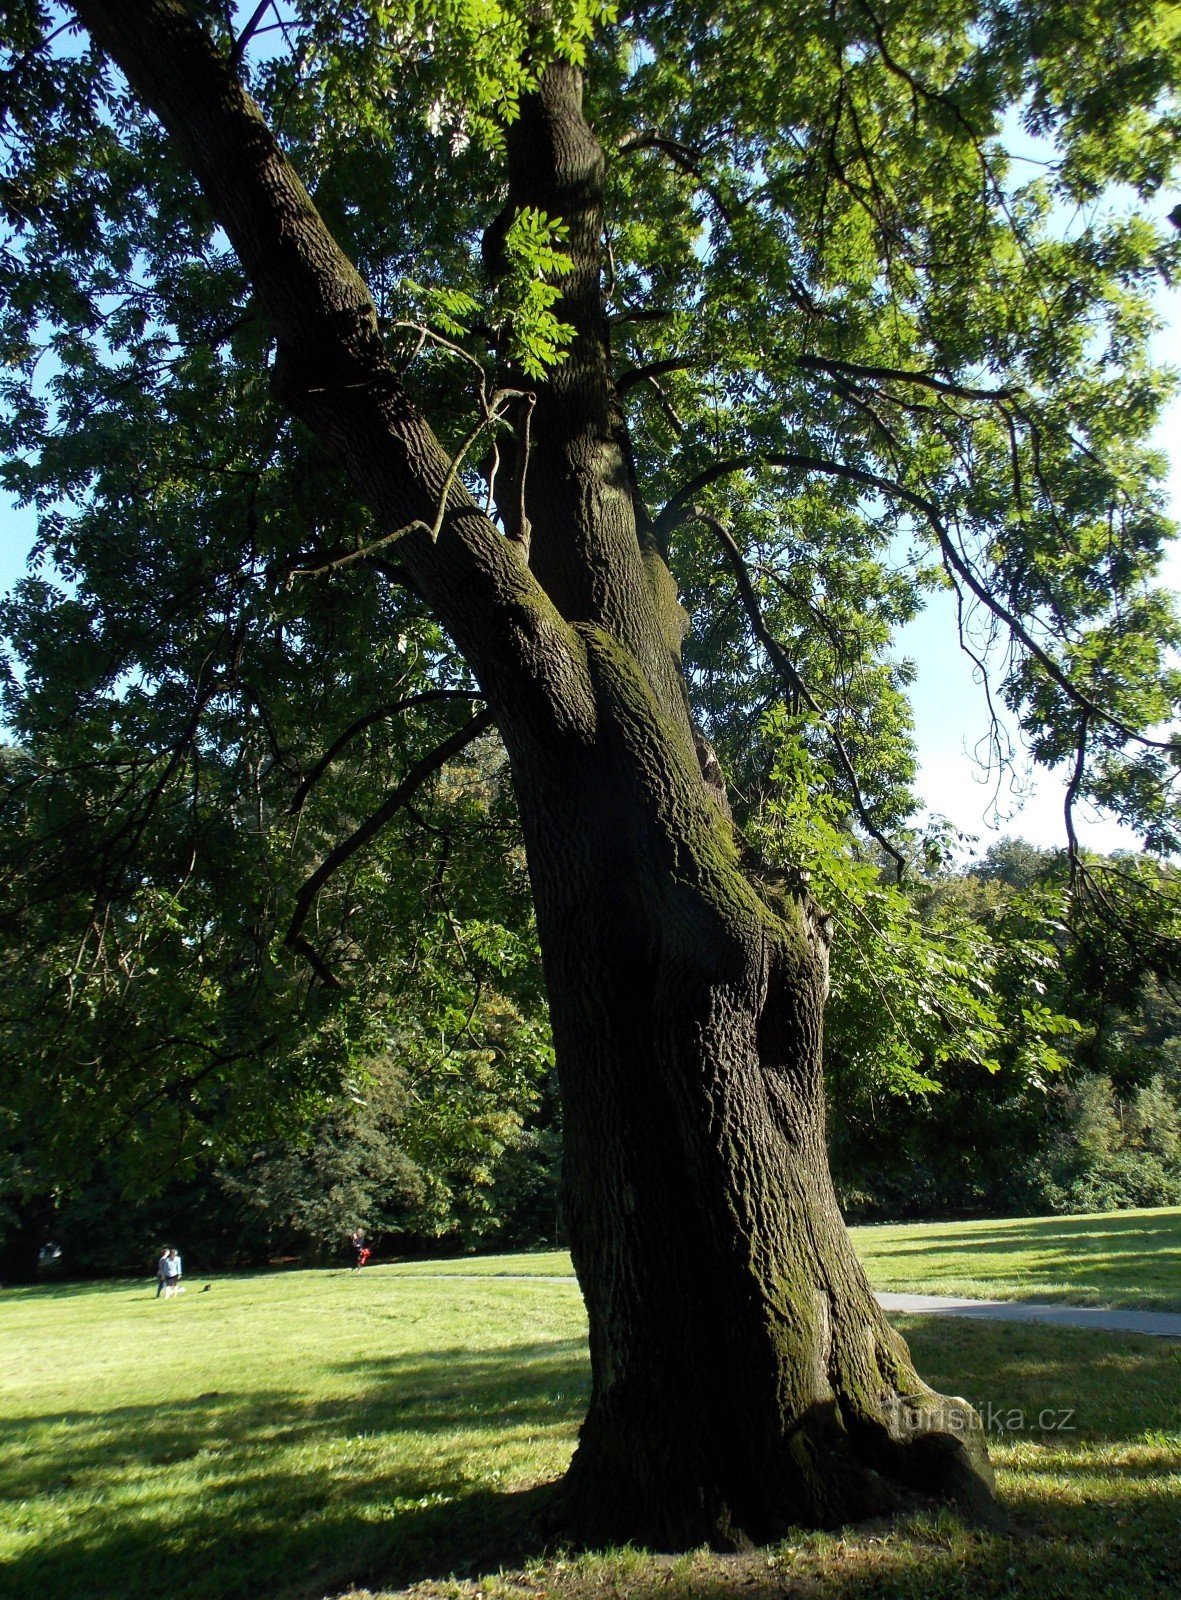 El árbol conmemorativo en el parque del castillo de B. Němcové en la ciudad de Karviná